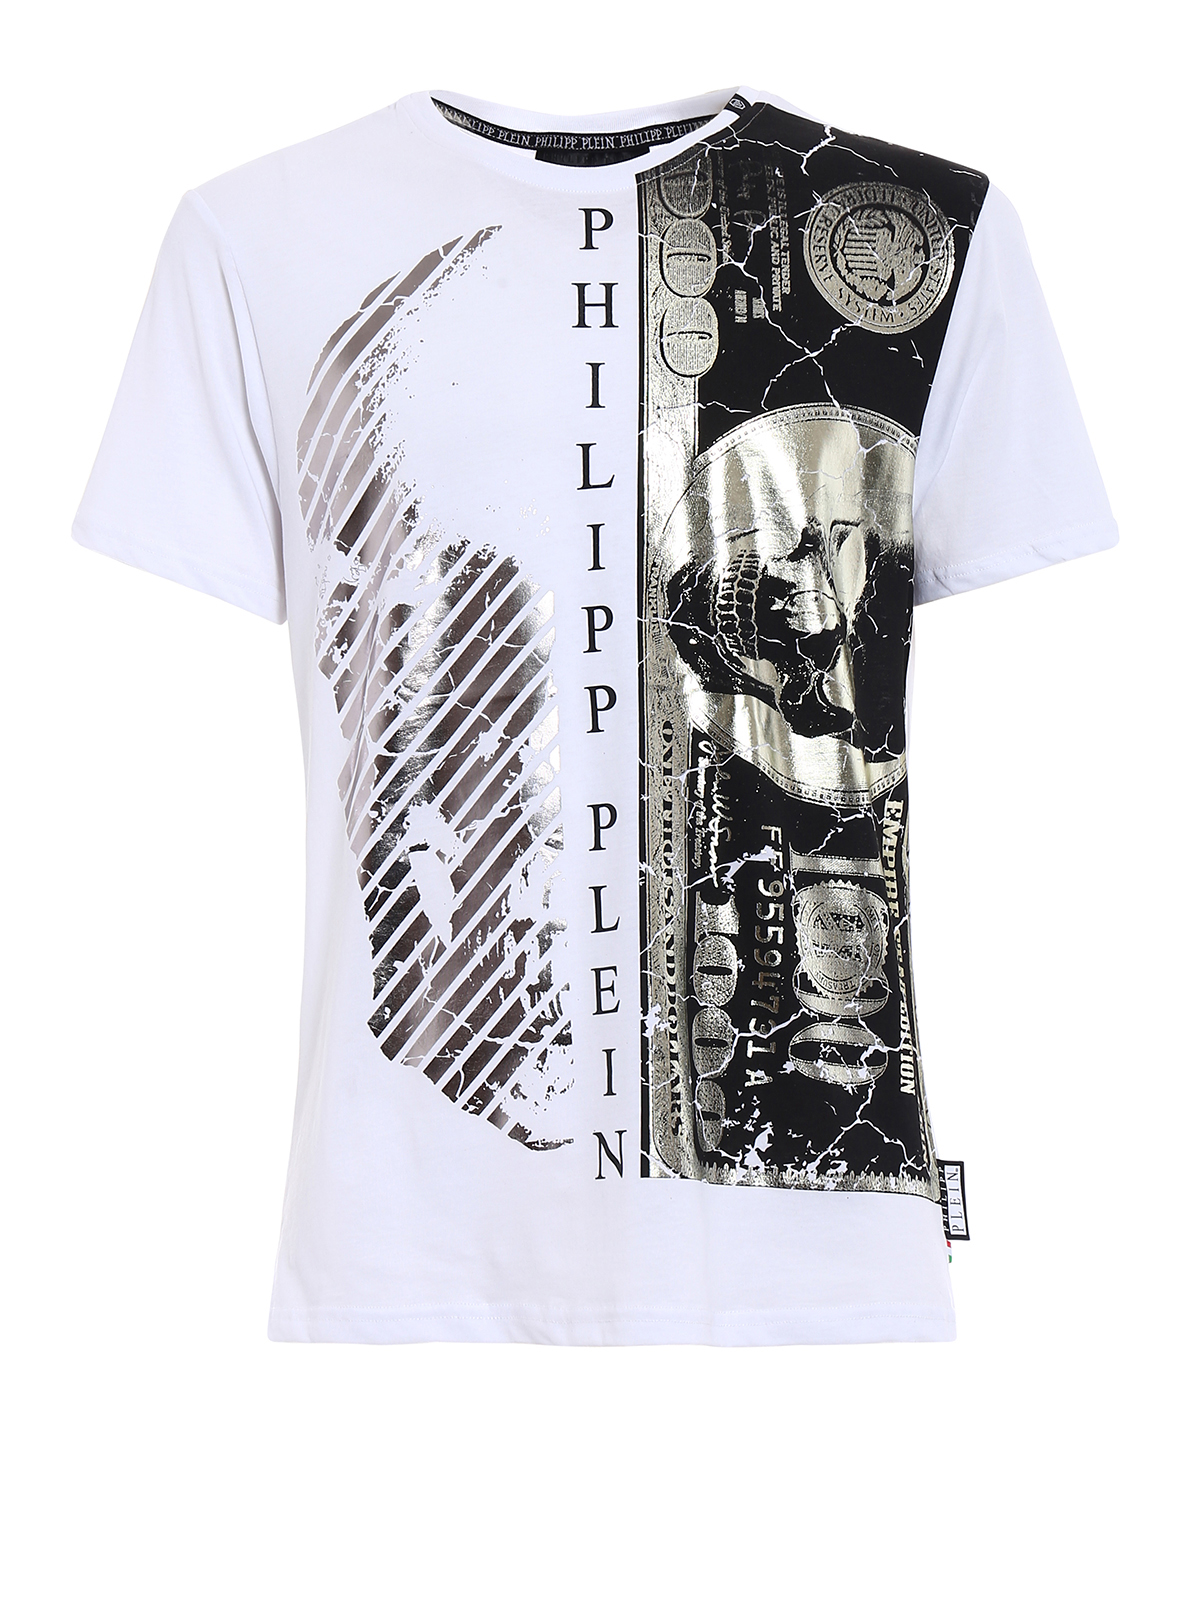 philipp plein t shirt price in rands